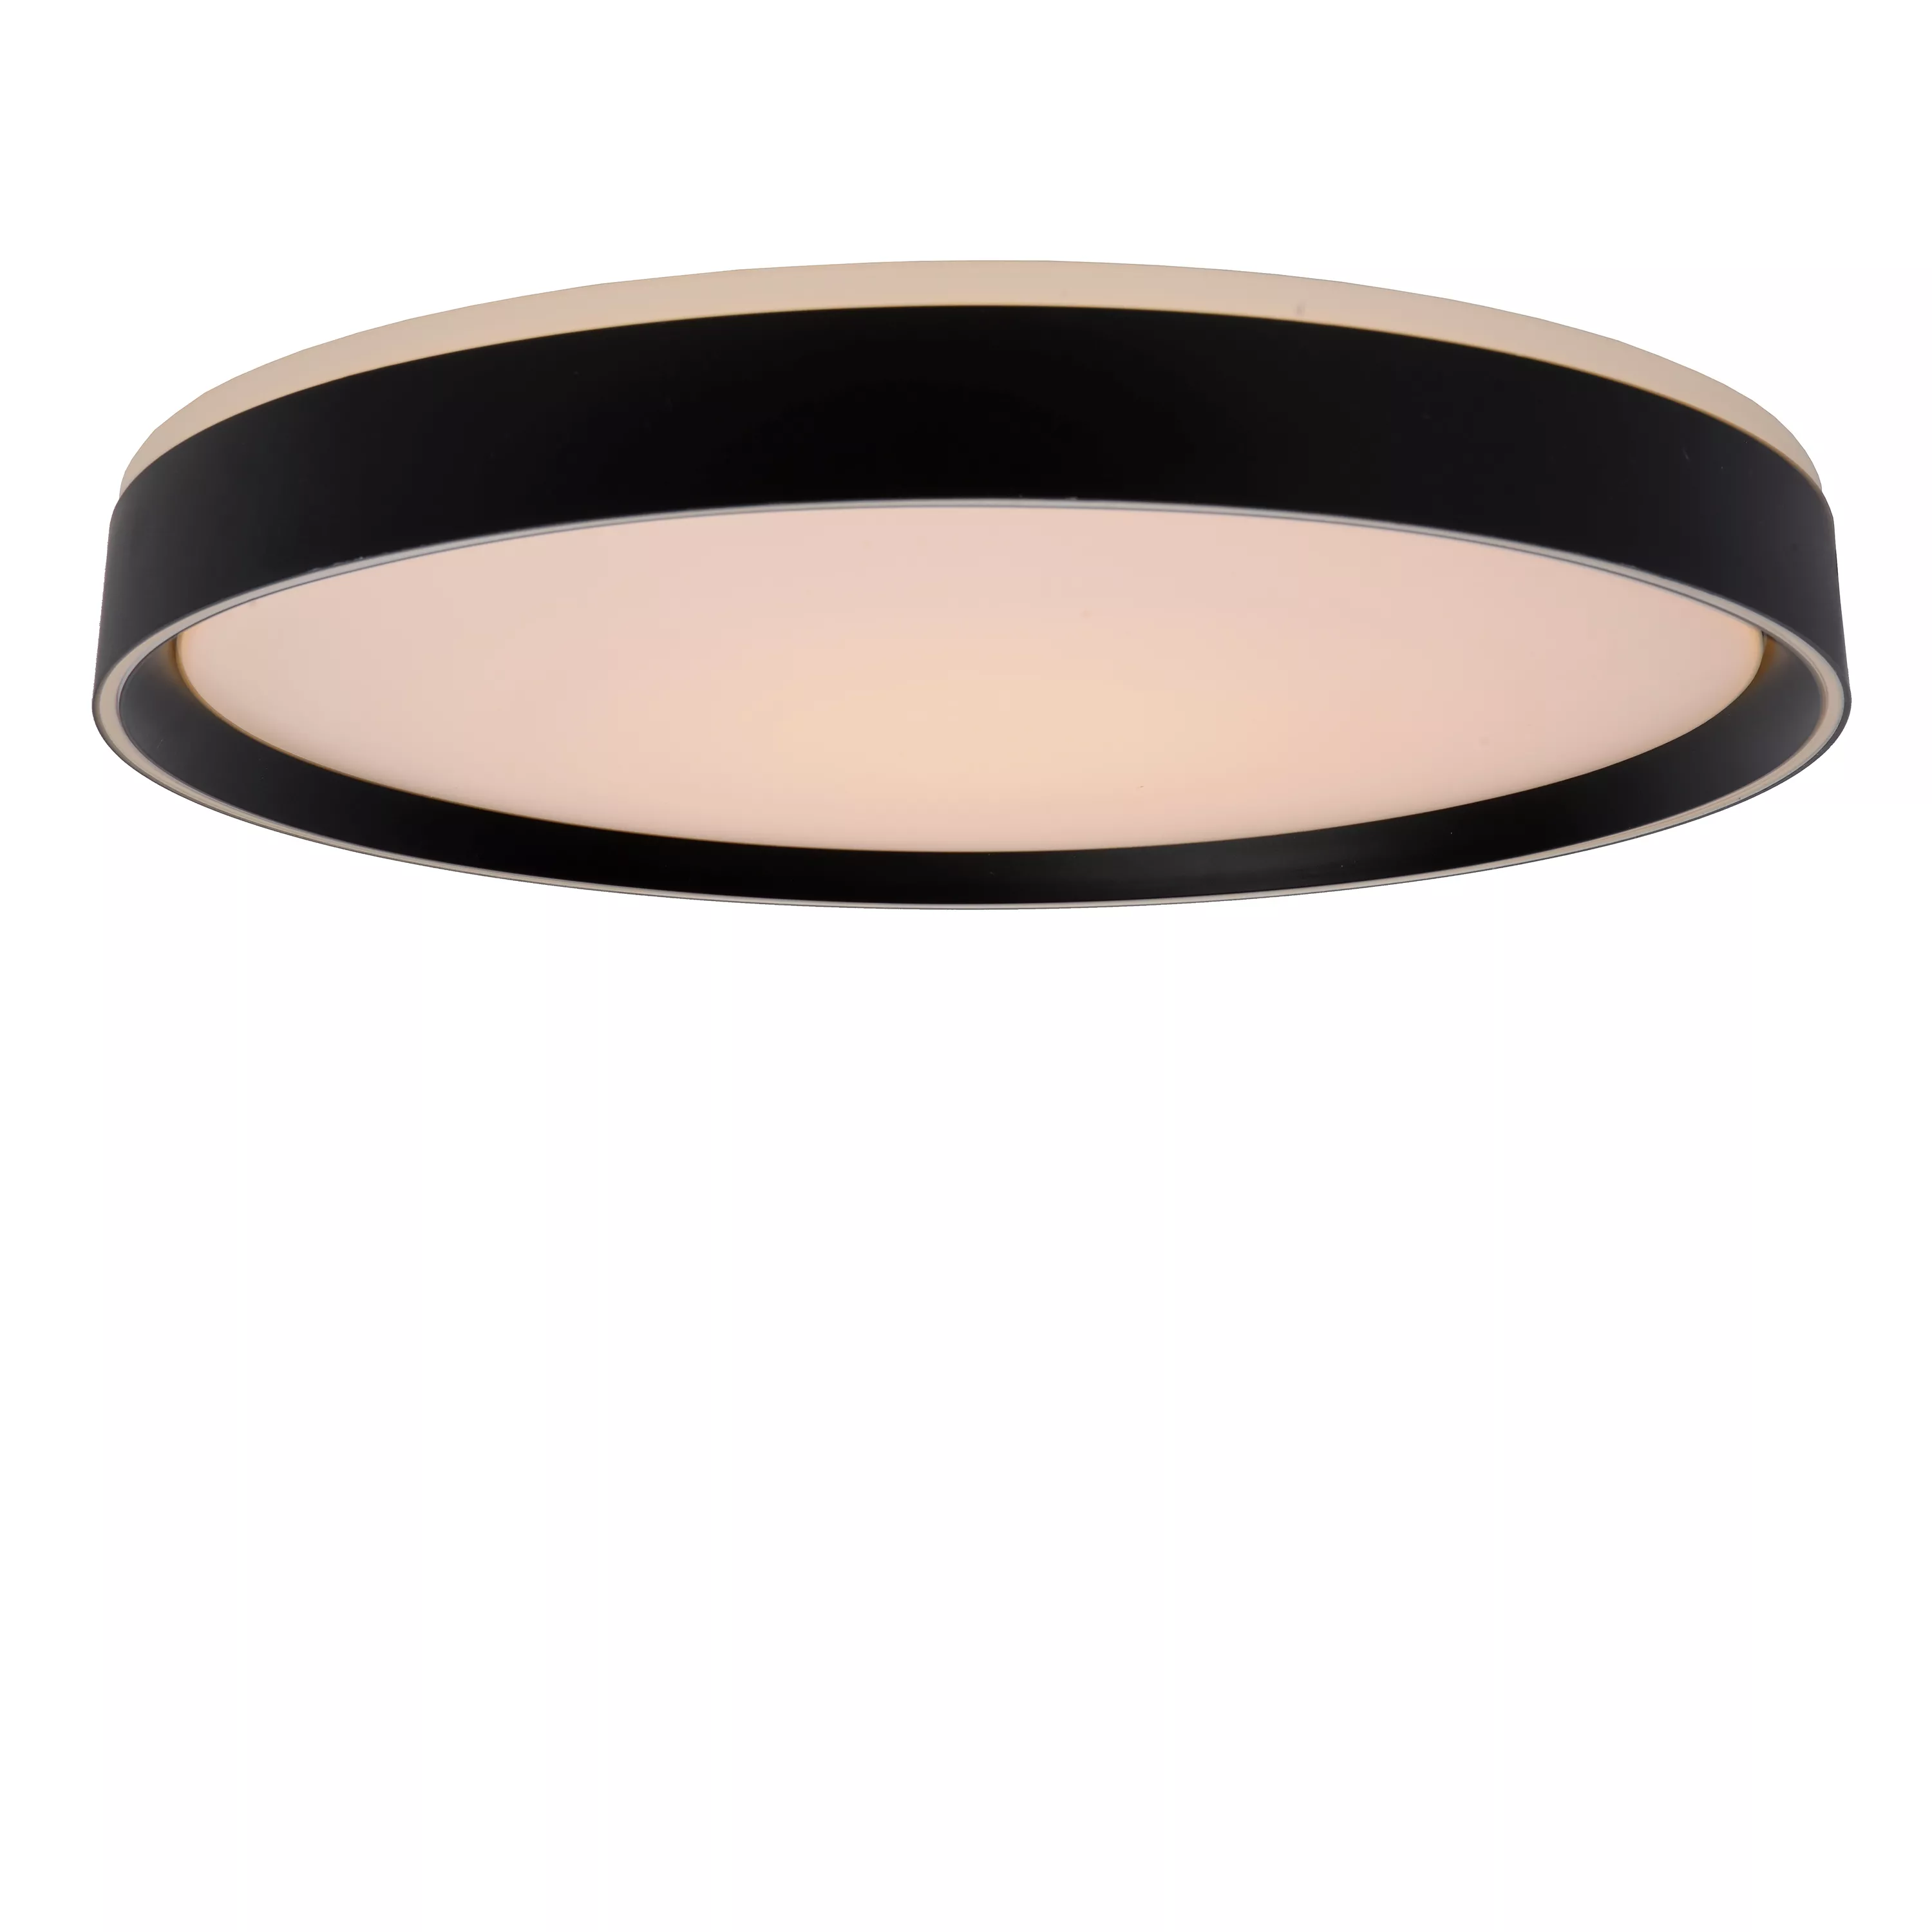 Moderné stropné svietidlo Nuria v čiernej farbe s trojstupňovým stmievačom je ideálnym pomocníkom do kuchyne alebo obývačky.